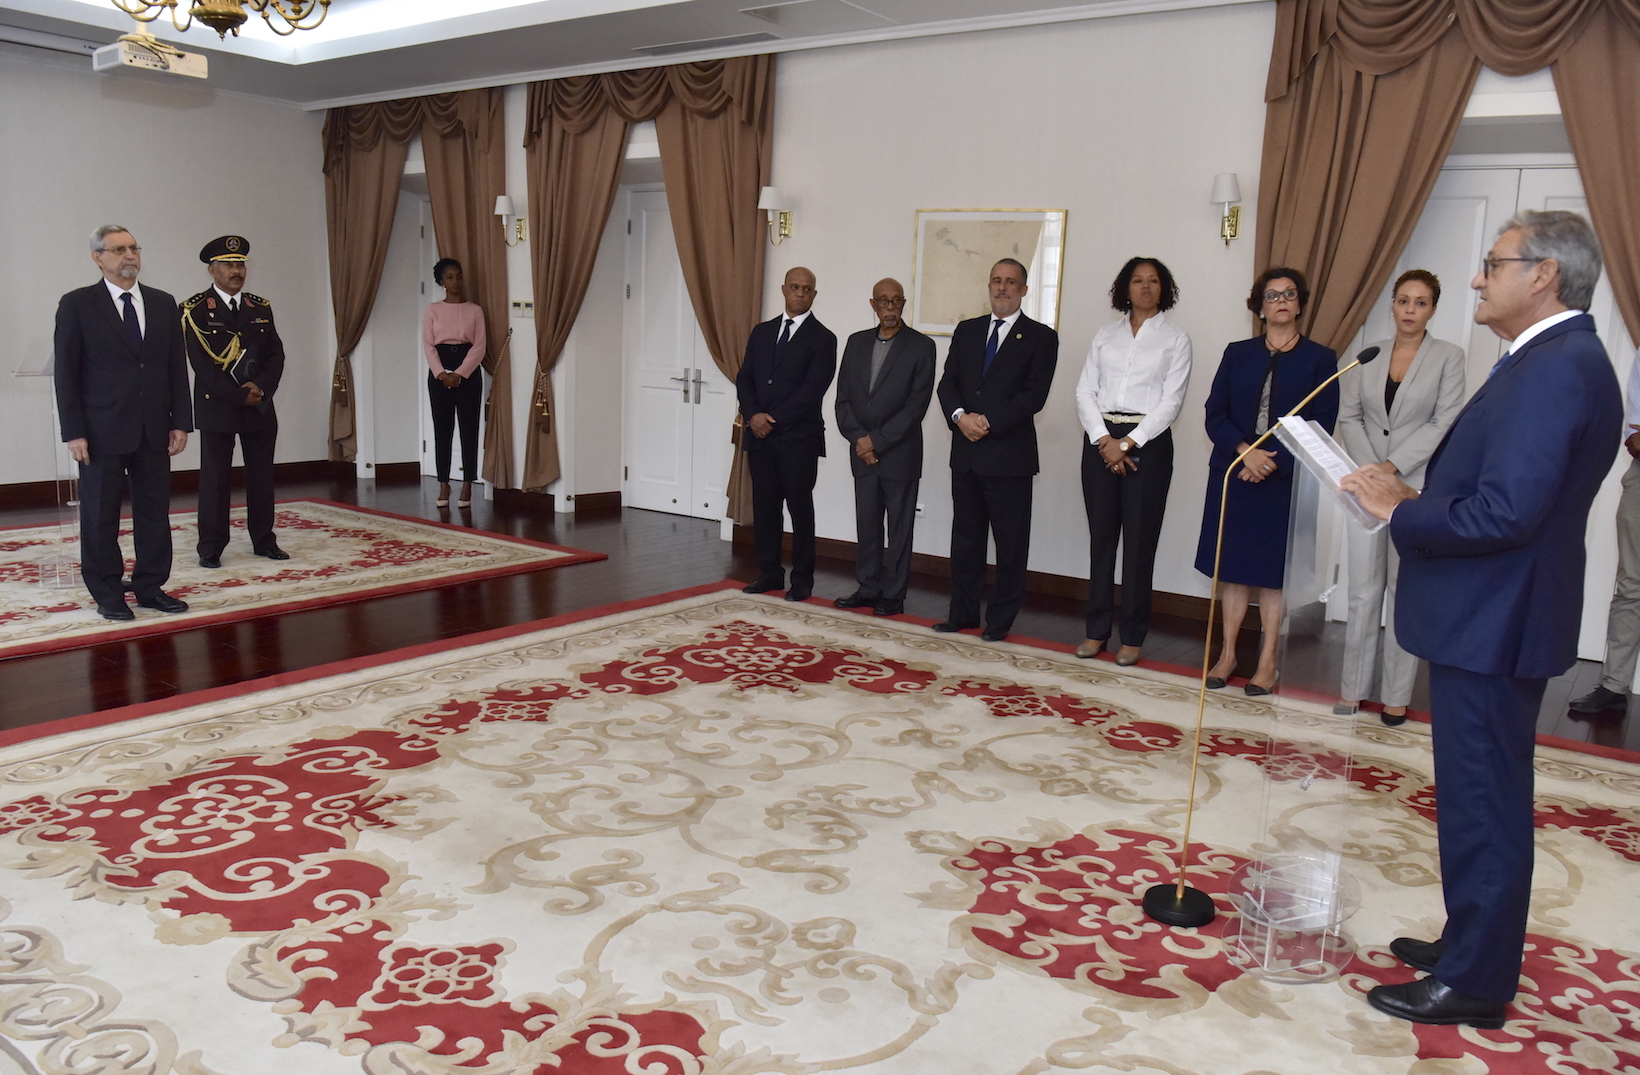 El nuevo embajador de la Orden de Malta ante Cabo Verde ha presentado sus credenciales